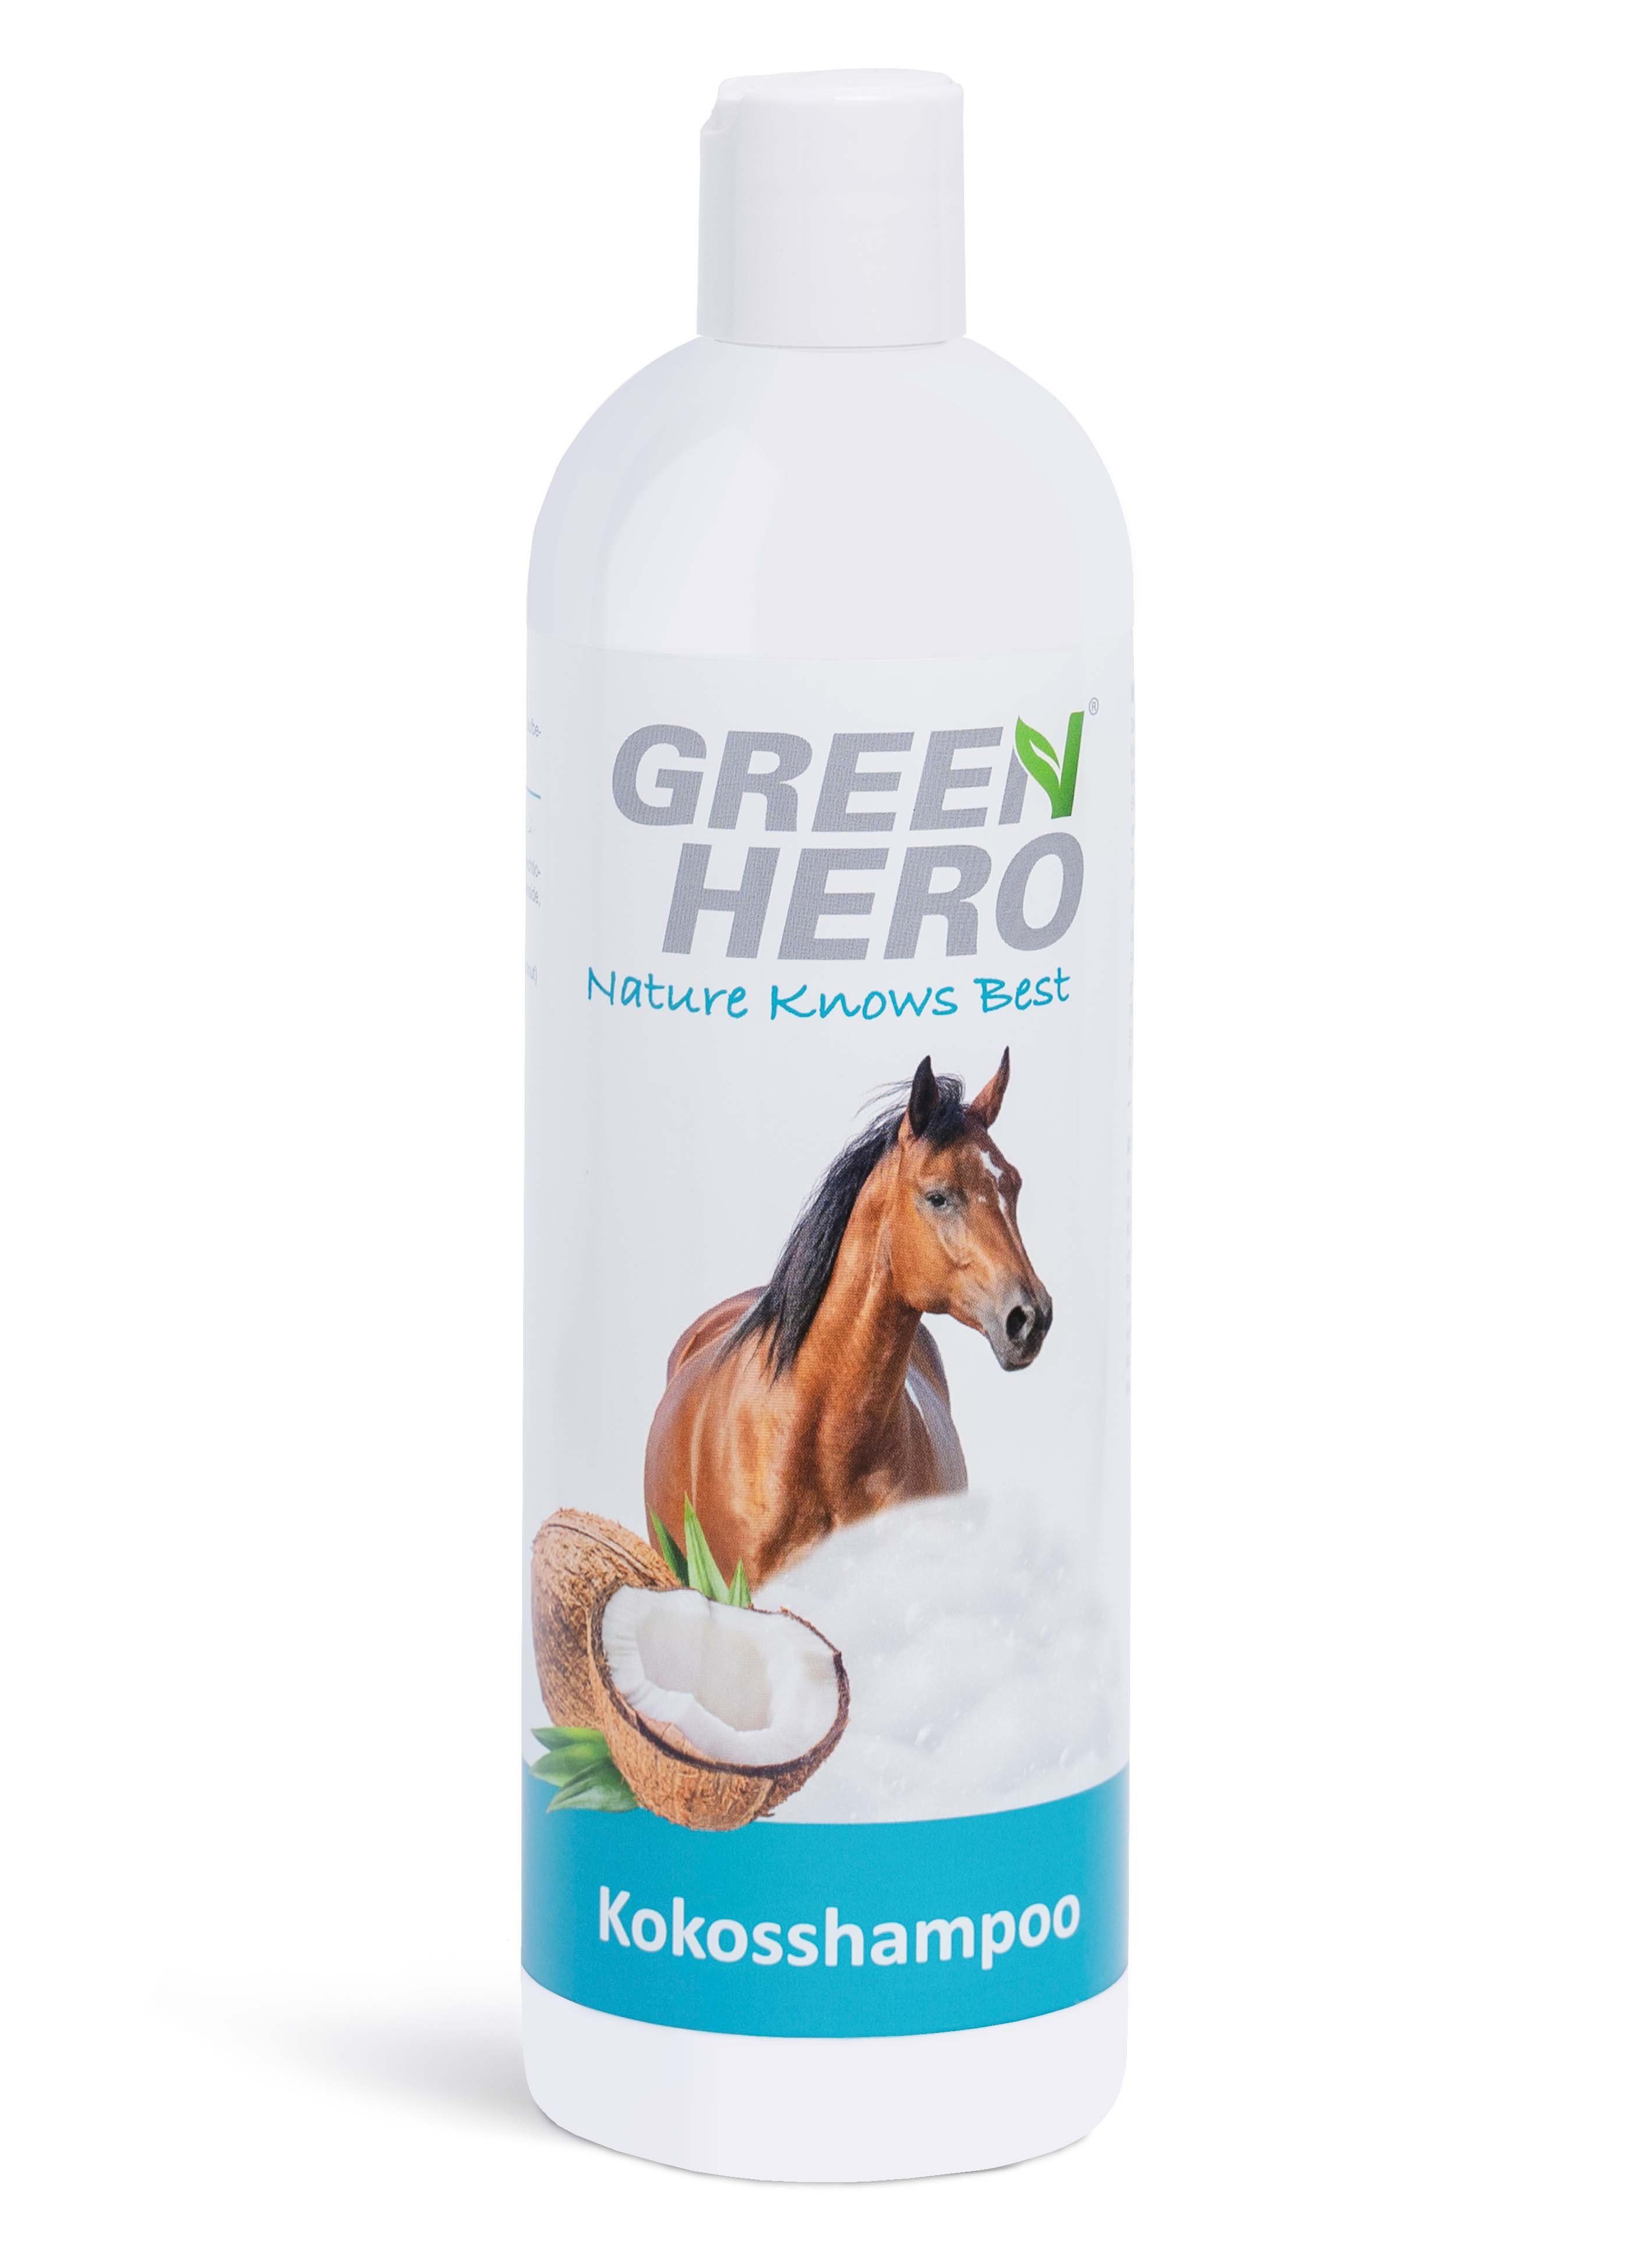 Pferde GreenHero Tiershampoo für ml Kokosöl, natürliches Kokosshampoo - 500